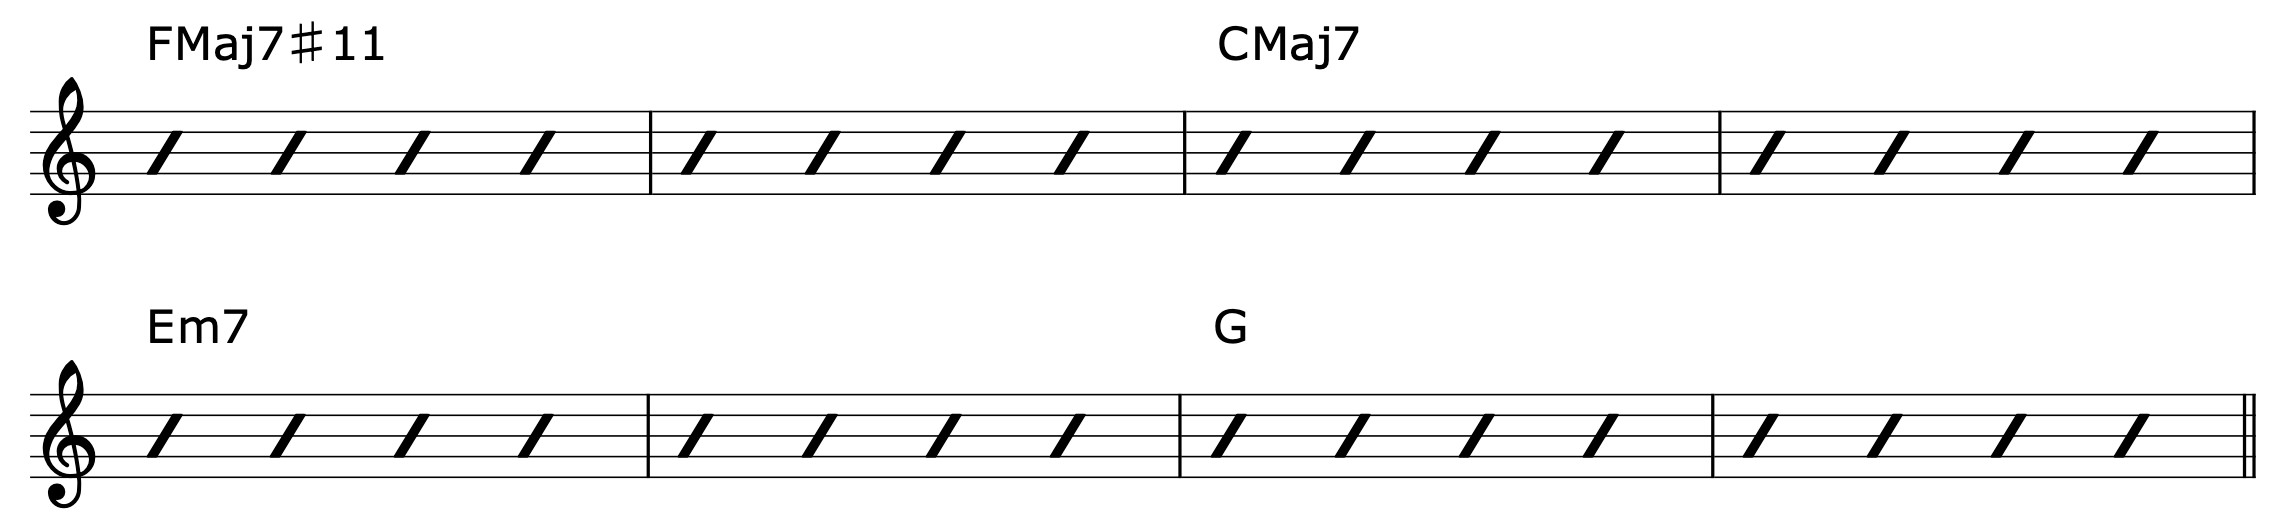 Lydian Chord Progression Guitar 2